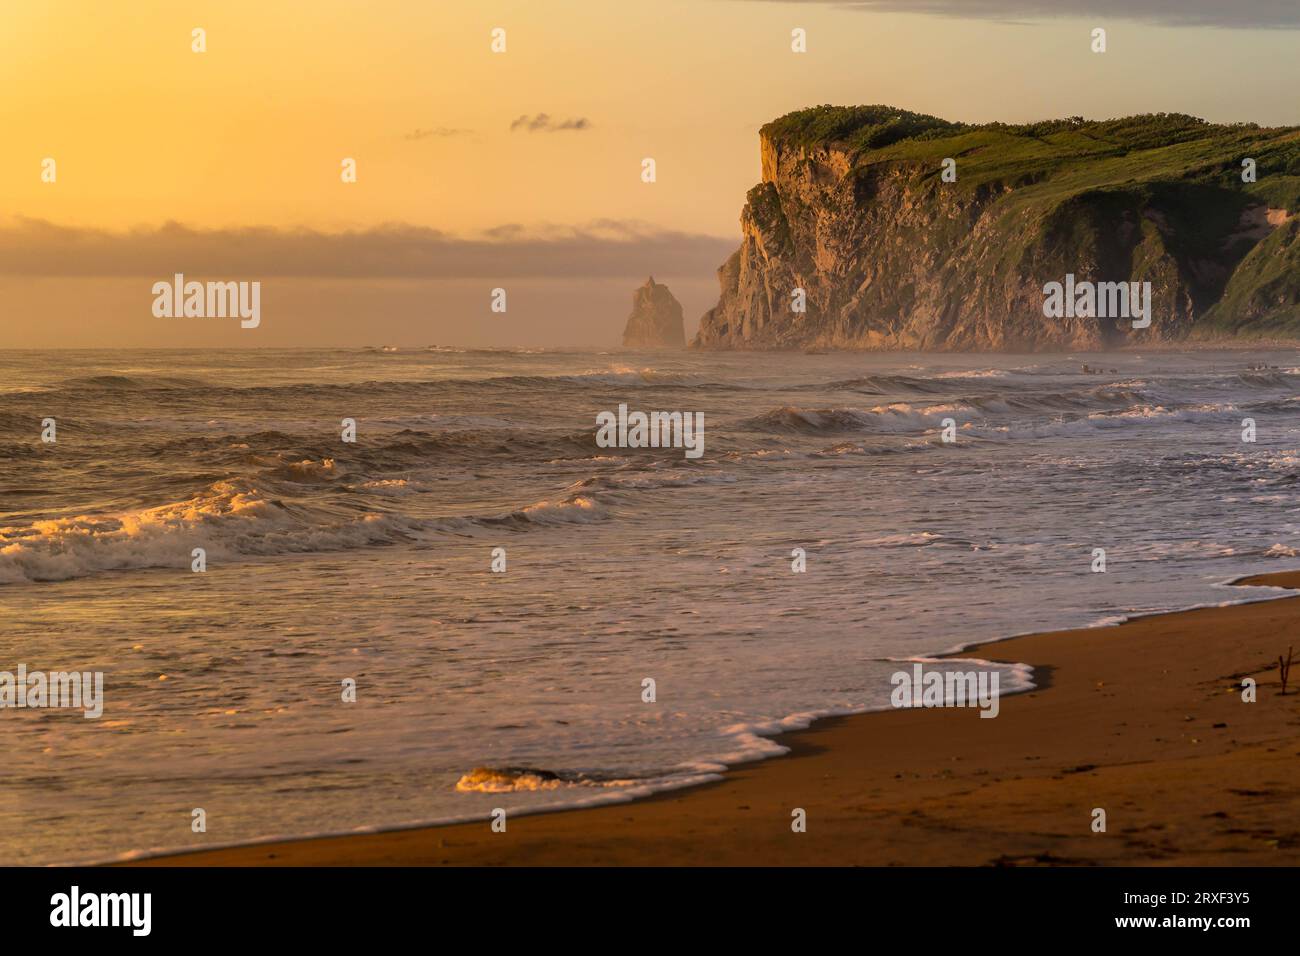 Der malerische Felsen und der Sandstrand das Meer von Japan während des wunderschönen bunten Sonnenaufgangs in der Primorsky-Region im russischen Fernen Osten. Stockfoto